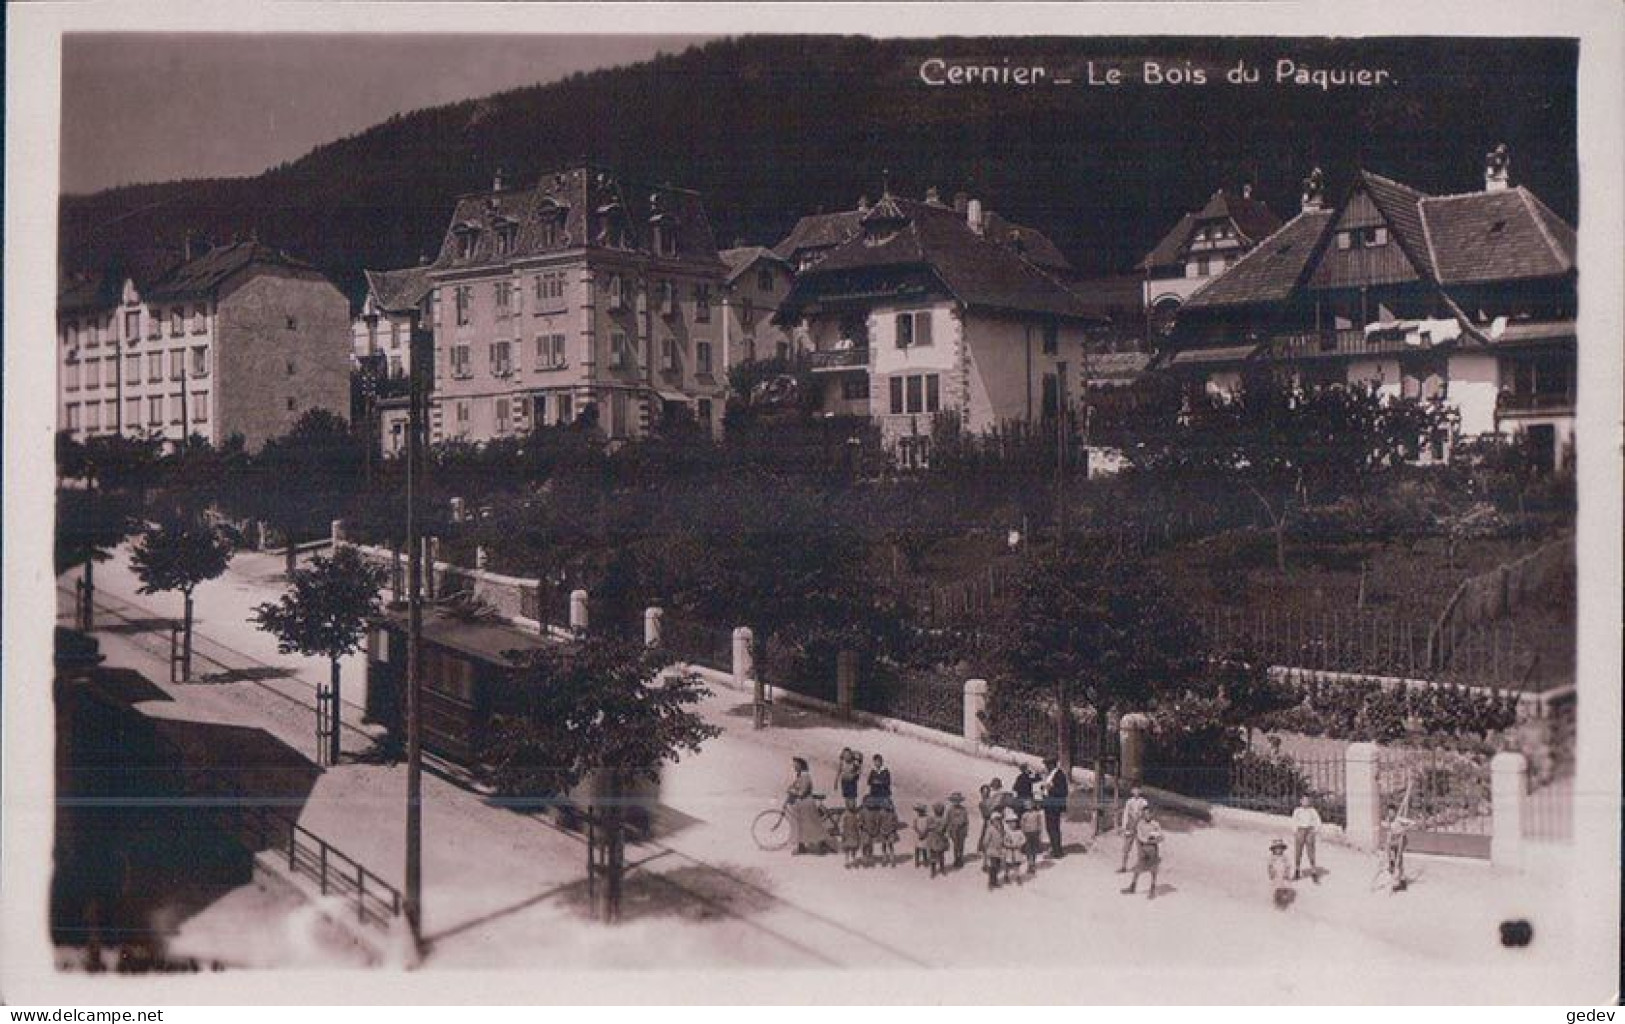 Cernier NE, Le Bois Du Paquier, Chemin De Fer Tramway, Rue Animée (1.7.1925) - Cernier